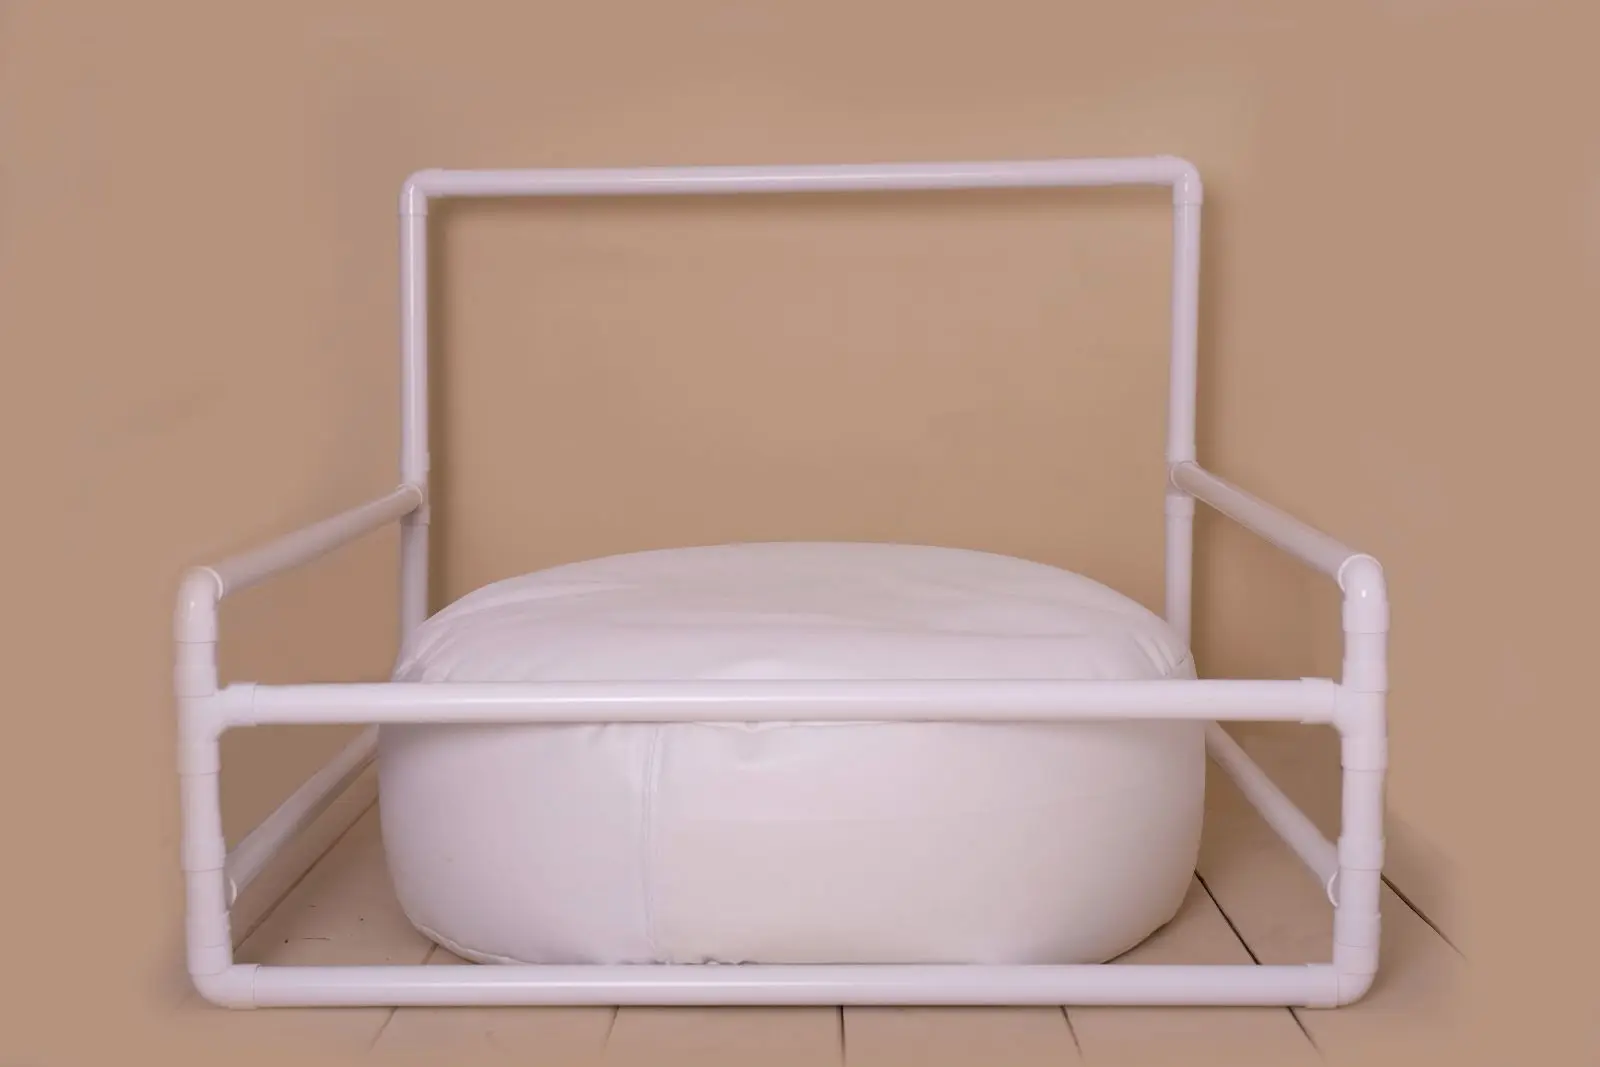 Студия размер кожа позирует Beanbag подушка для фотографирования новорожденного Prop позирует шайбу 28x10 дюймов младенческой Poser Подушка-Фото prop